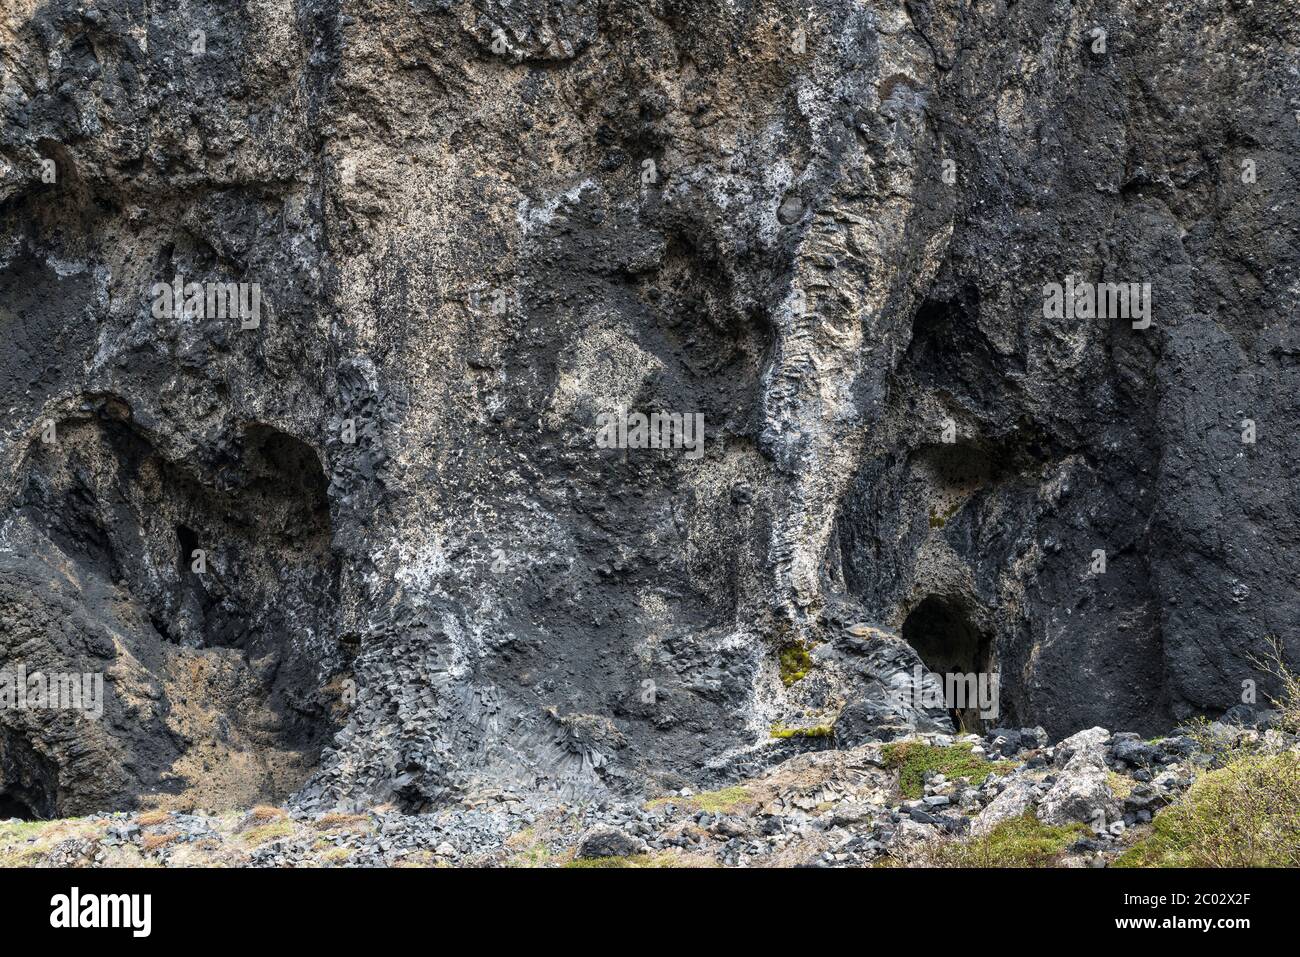 Hljóðaklettar (Echo Felsen), außergewöhnliche vulkanische Basaltgesteinsformationen in der Jökulsárgljúfur Schlucht im Nordosten Islands Stockfoto